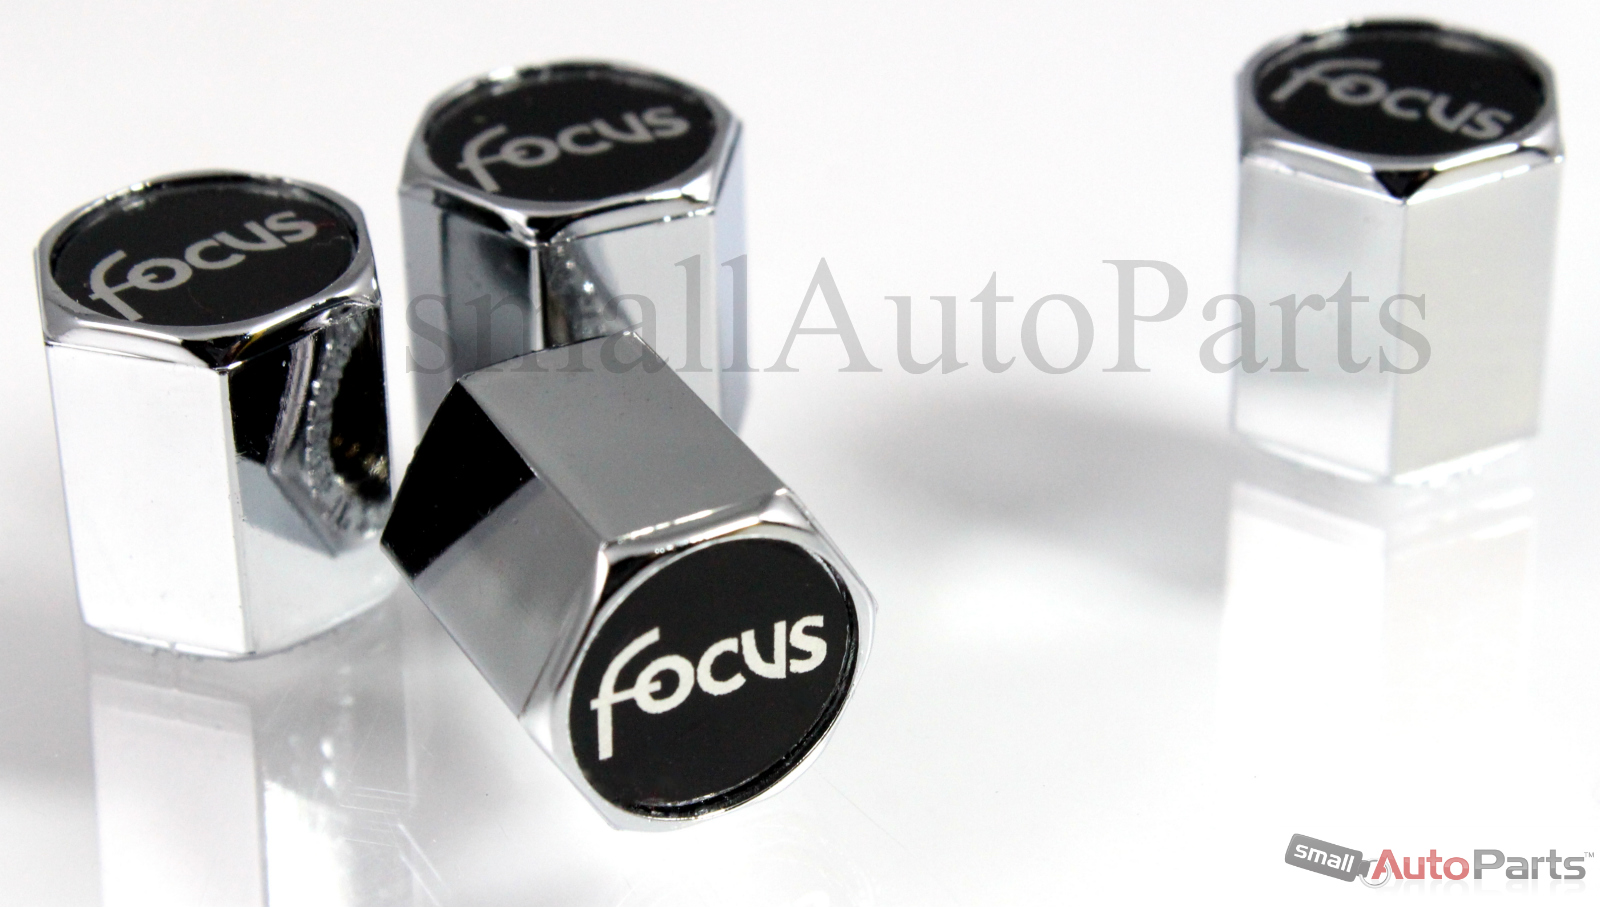 Ford focus valve stem caps #10